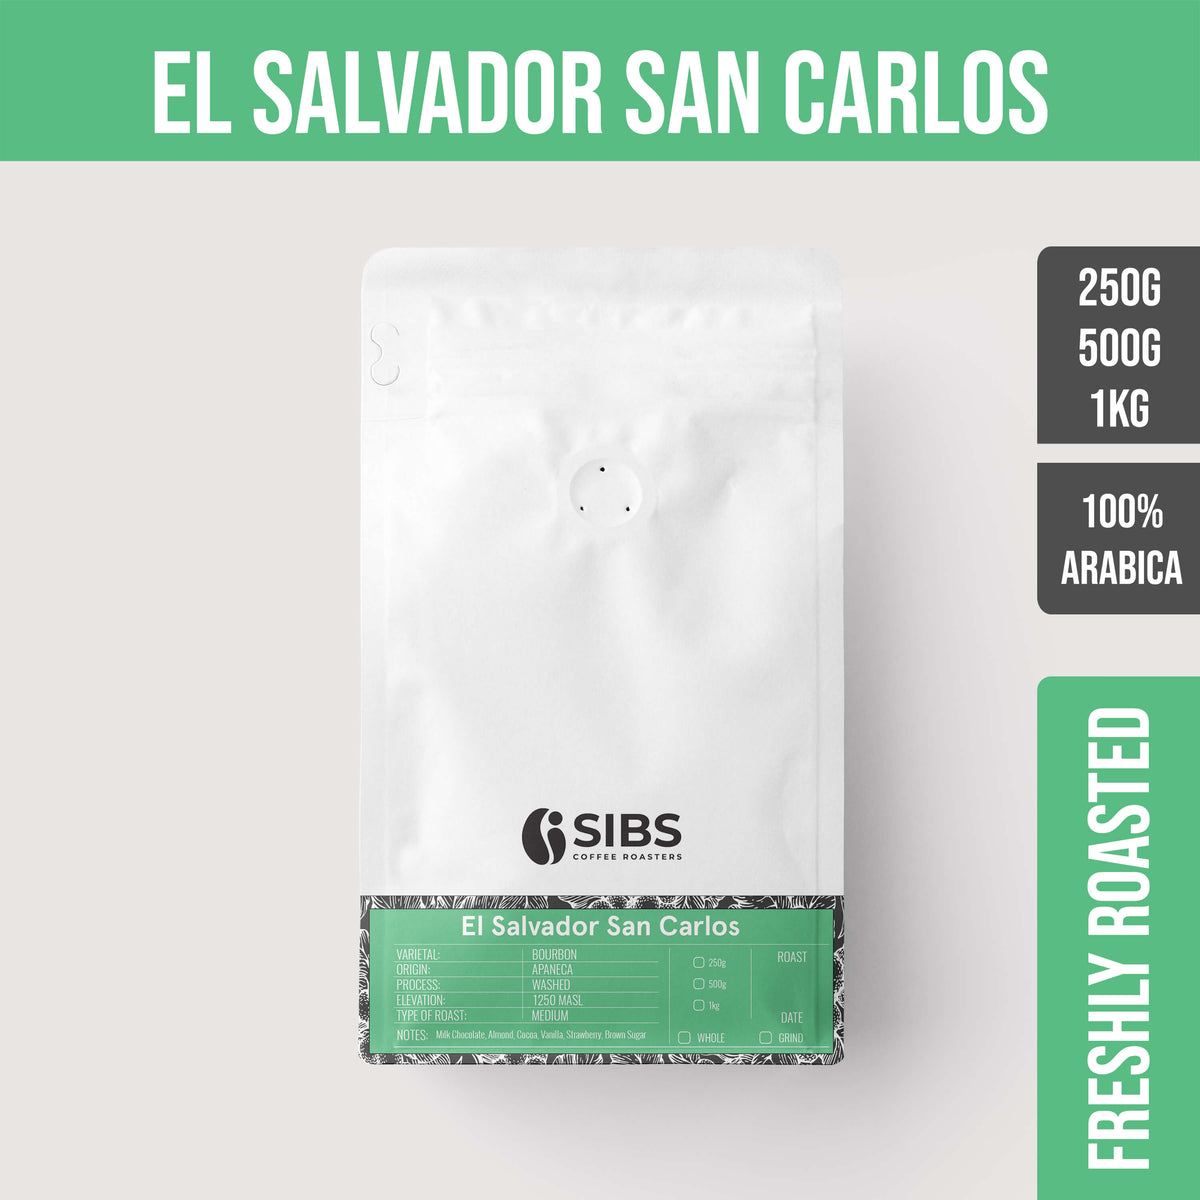 El Salvador San Carlos (100% Arabica) - Freshly Roasted Coffee